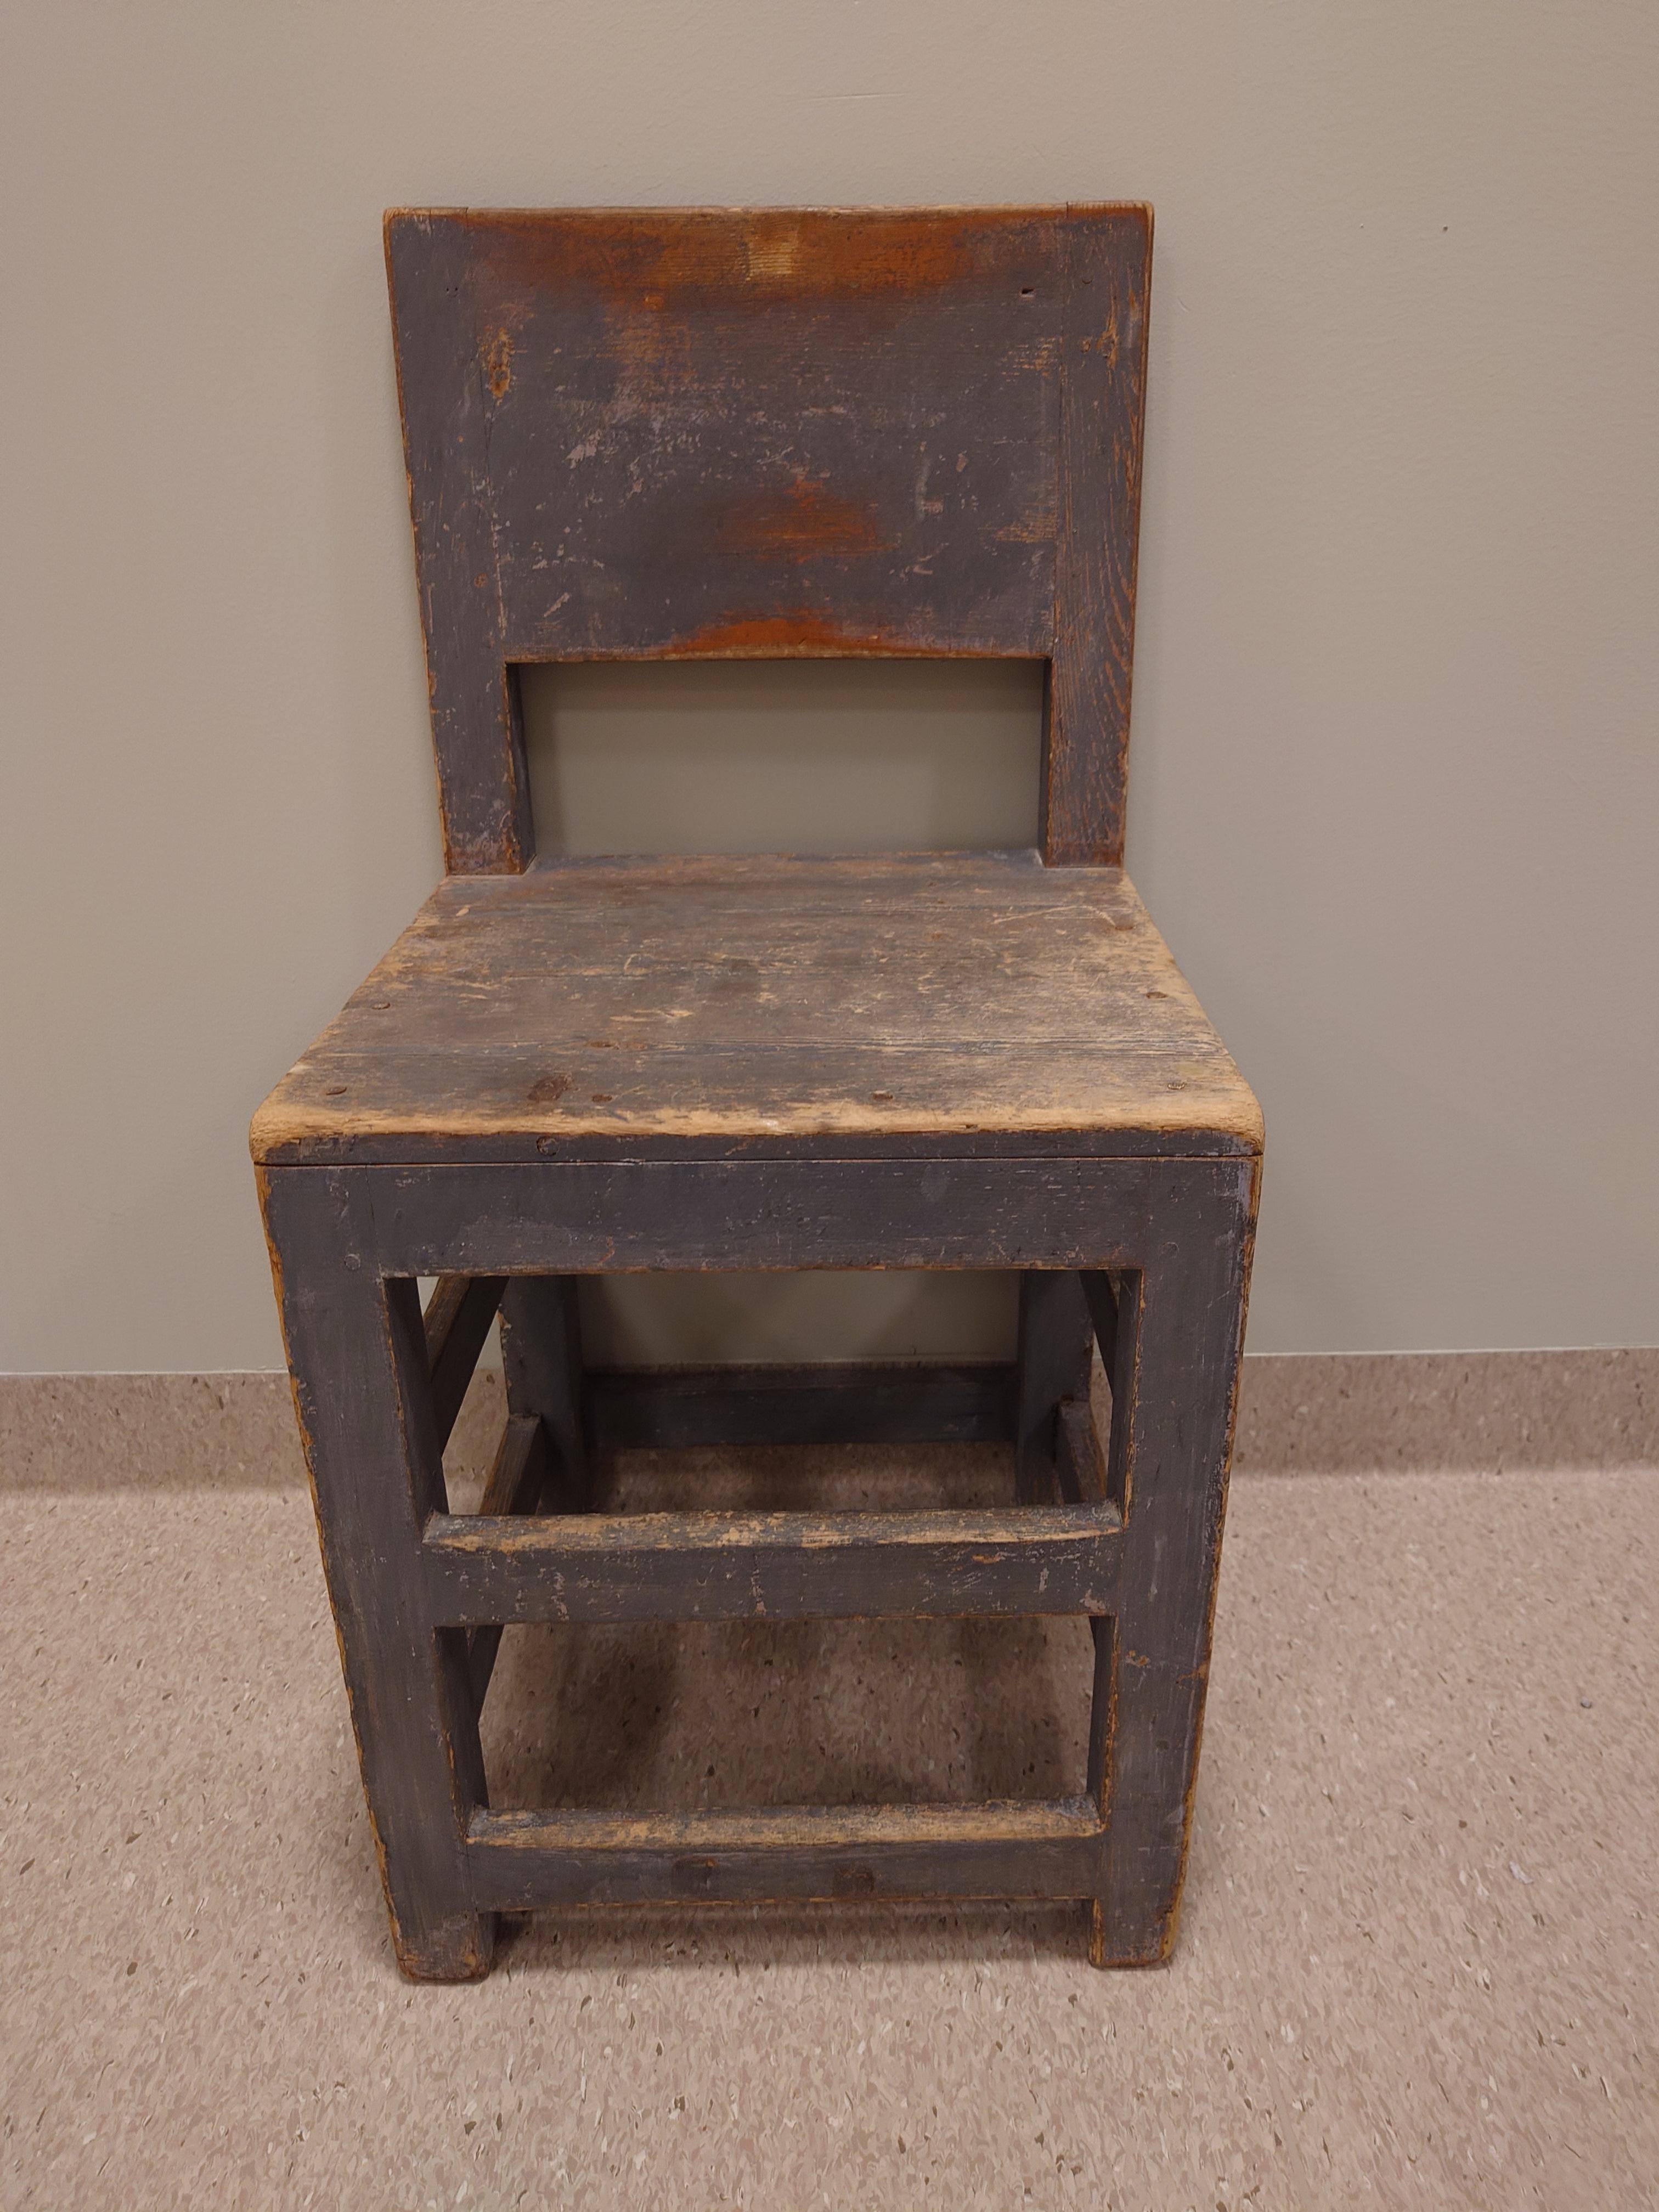 Rustikaler Stuhl im Barockstil aus Boden Norrbotten, Nordschweden.
Der Stuhl ist ein Landhausmöbel aus der ersten Hälfte des 19. Jahrhunderts.
Das Modell selbst stammt aus der Barockzeit, d. h. aus der Mitte des 18. Jahrhunderts, aber der Stil hat